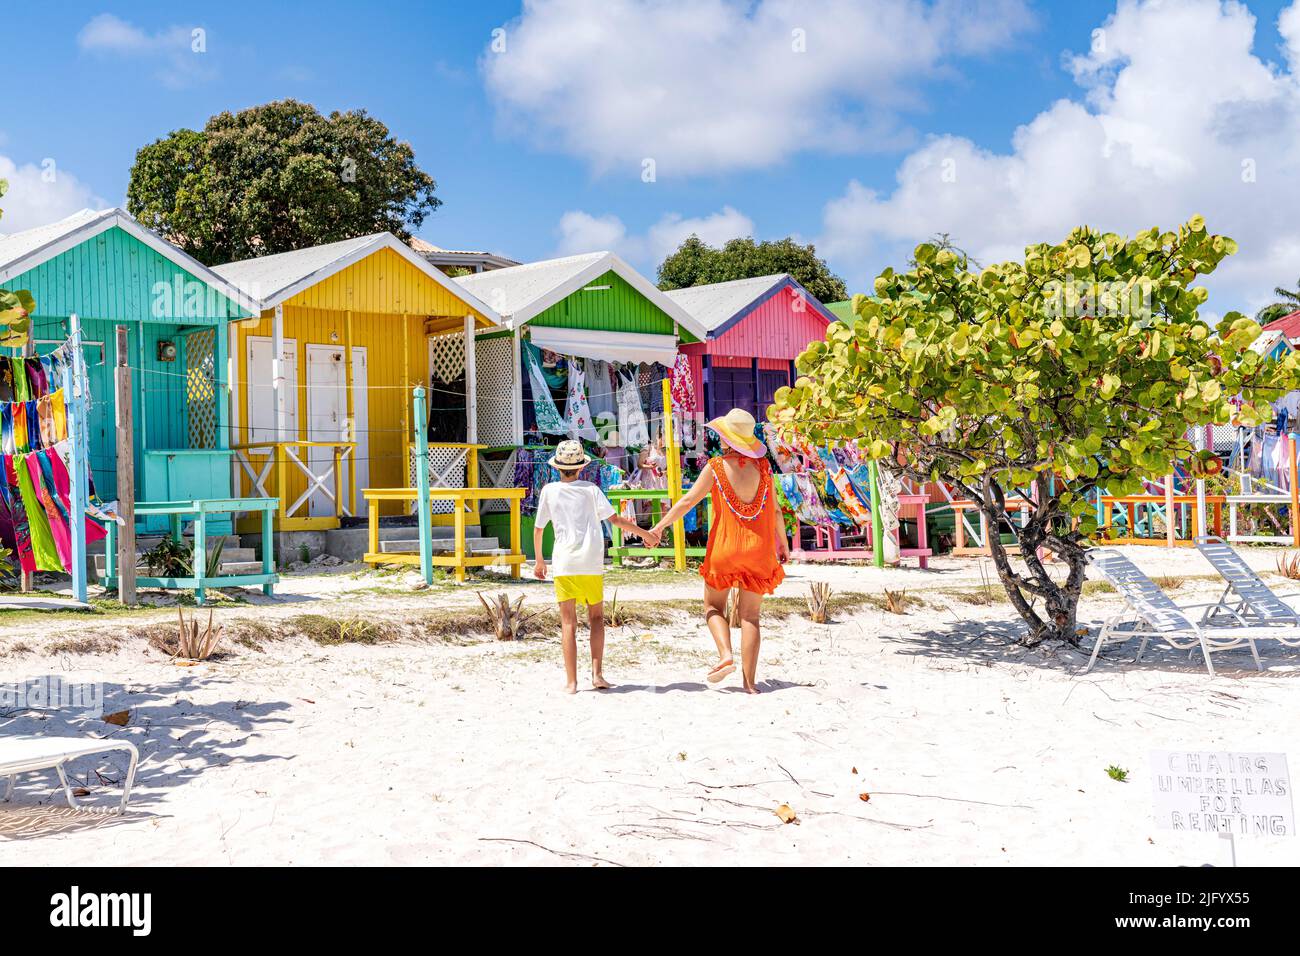 Madre con ragazzino che guarda le colorate capanne sulla spiaggia che vendono souvenir, Antigua, Isole Leeward, Indie Occidentali, Caraibi, America Centrale Foto Stock